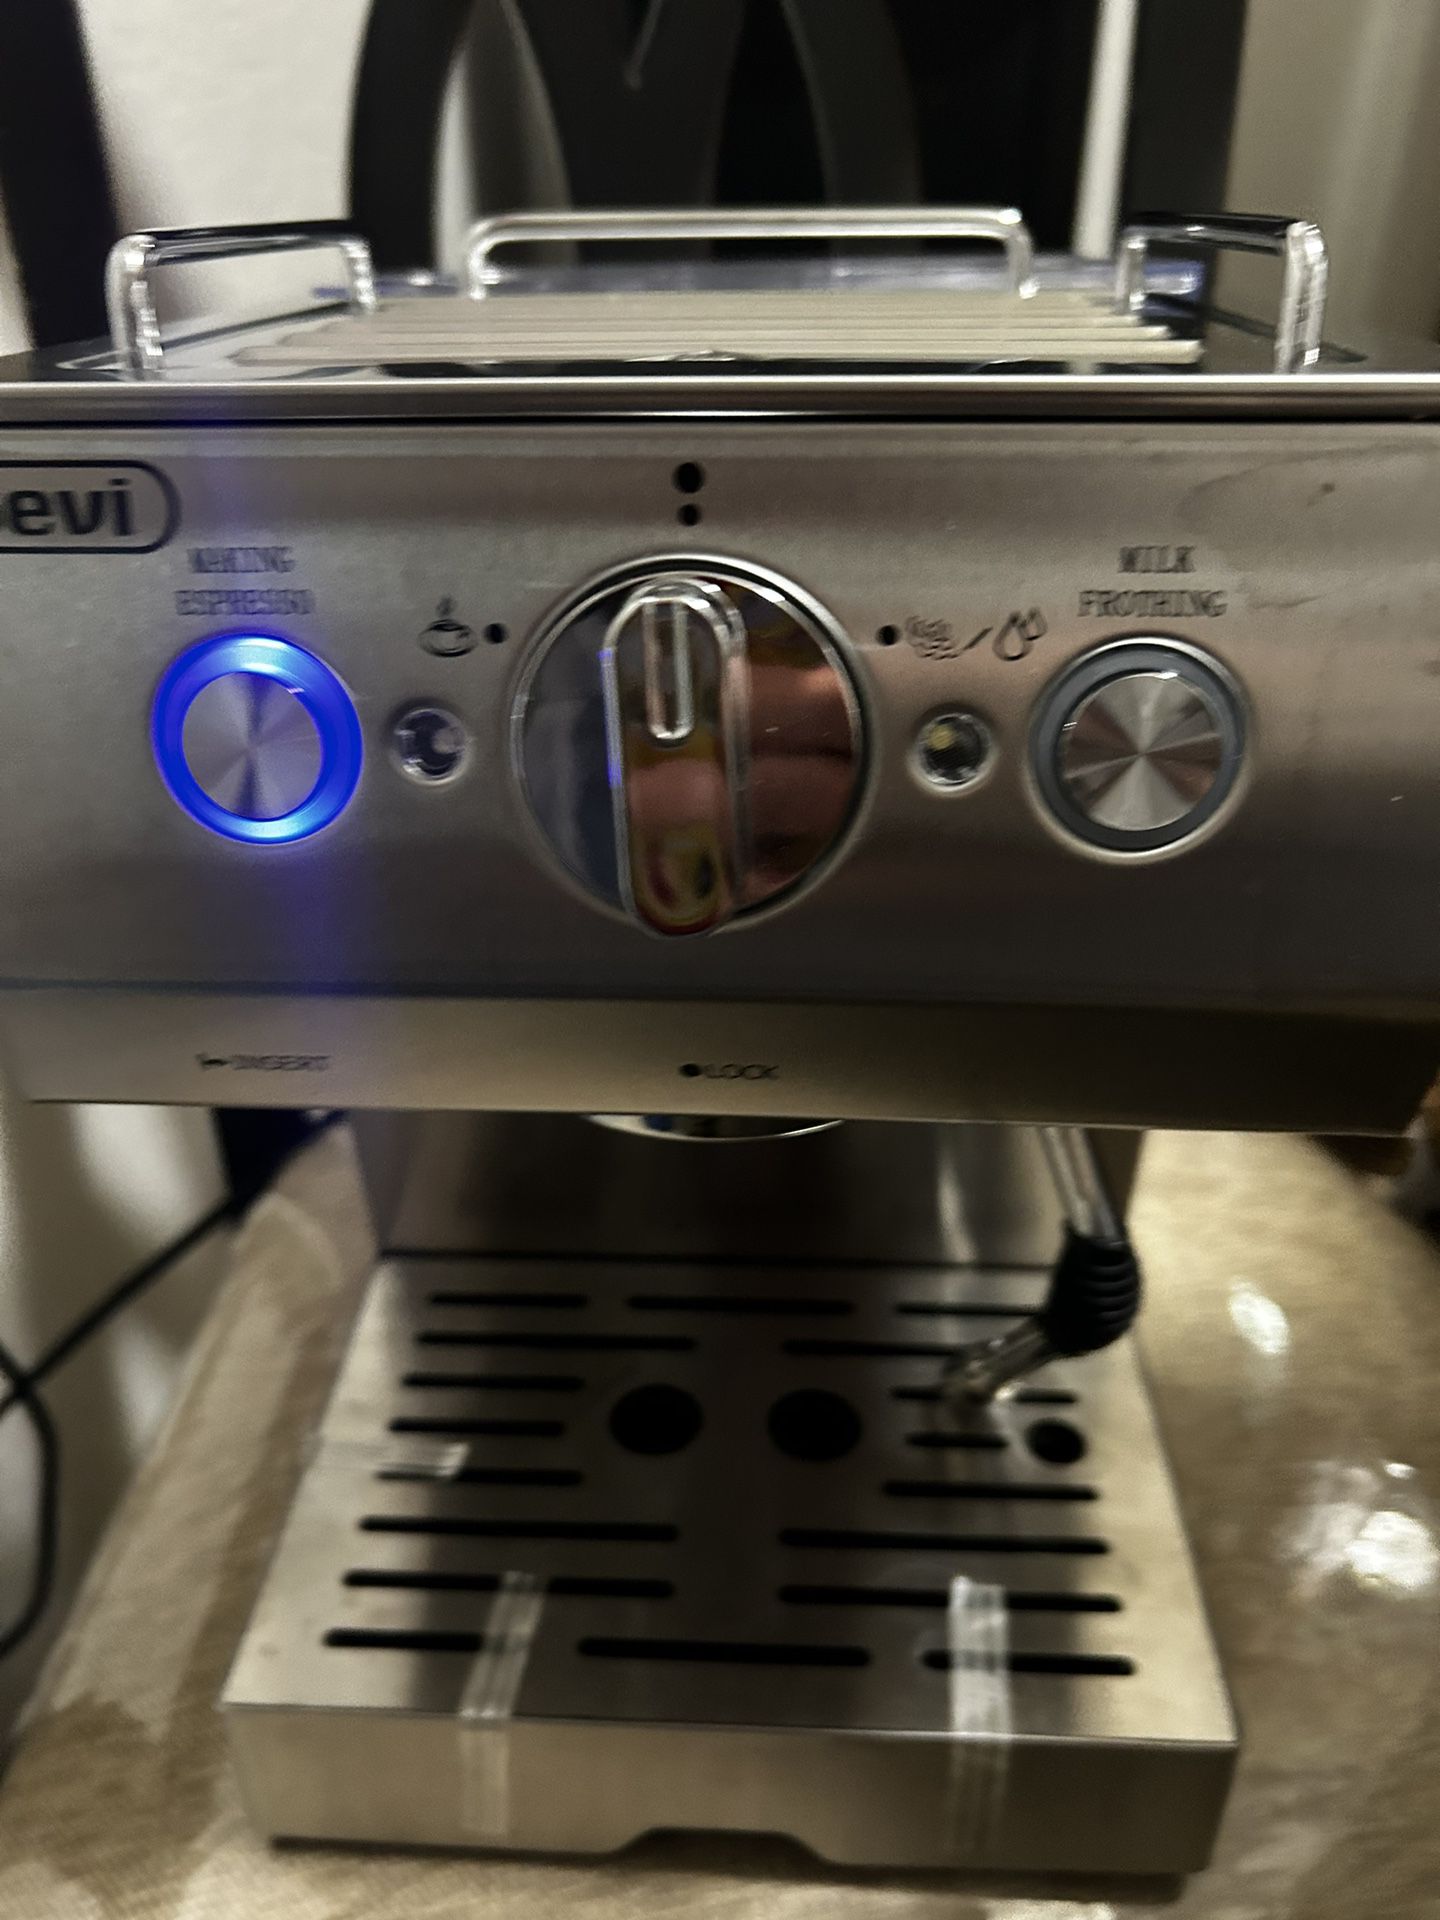 Gevi Silver Espresso Coffee Machine LAST ONE